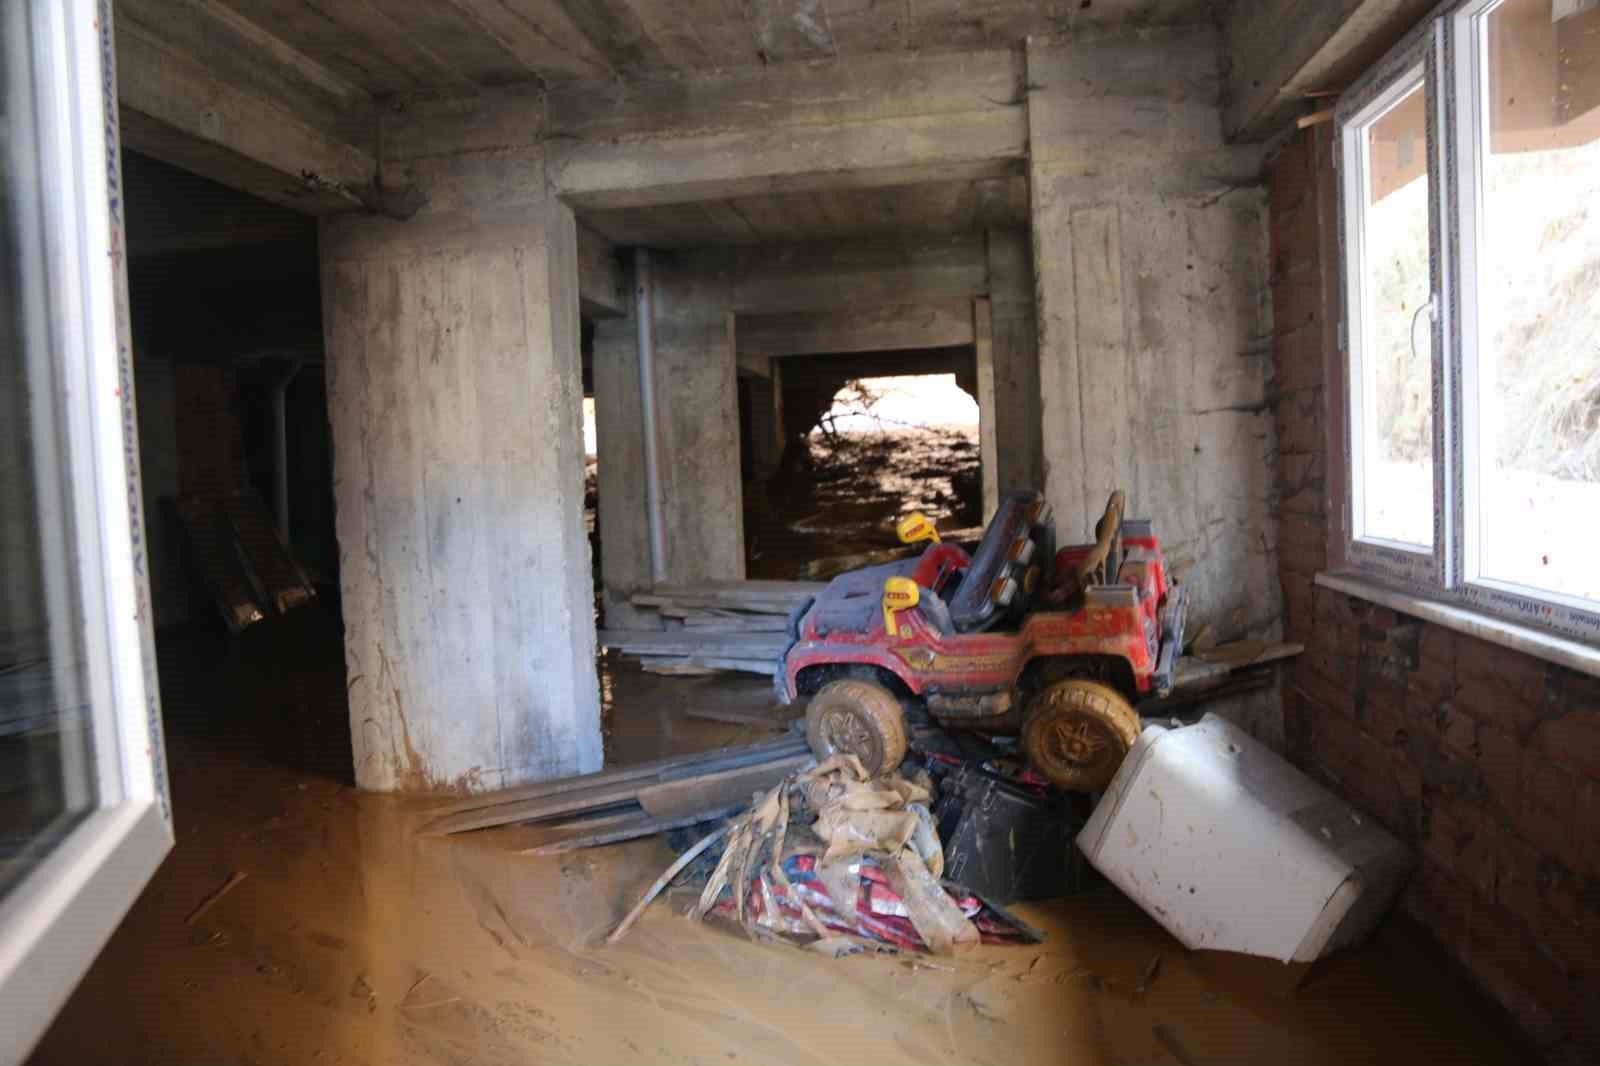 artvinde yamactan kopan topraklar evlerin icerisine doldu 10 bina zarar gordu 7 TefIjbwL